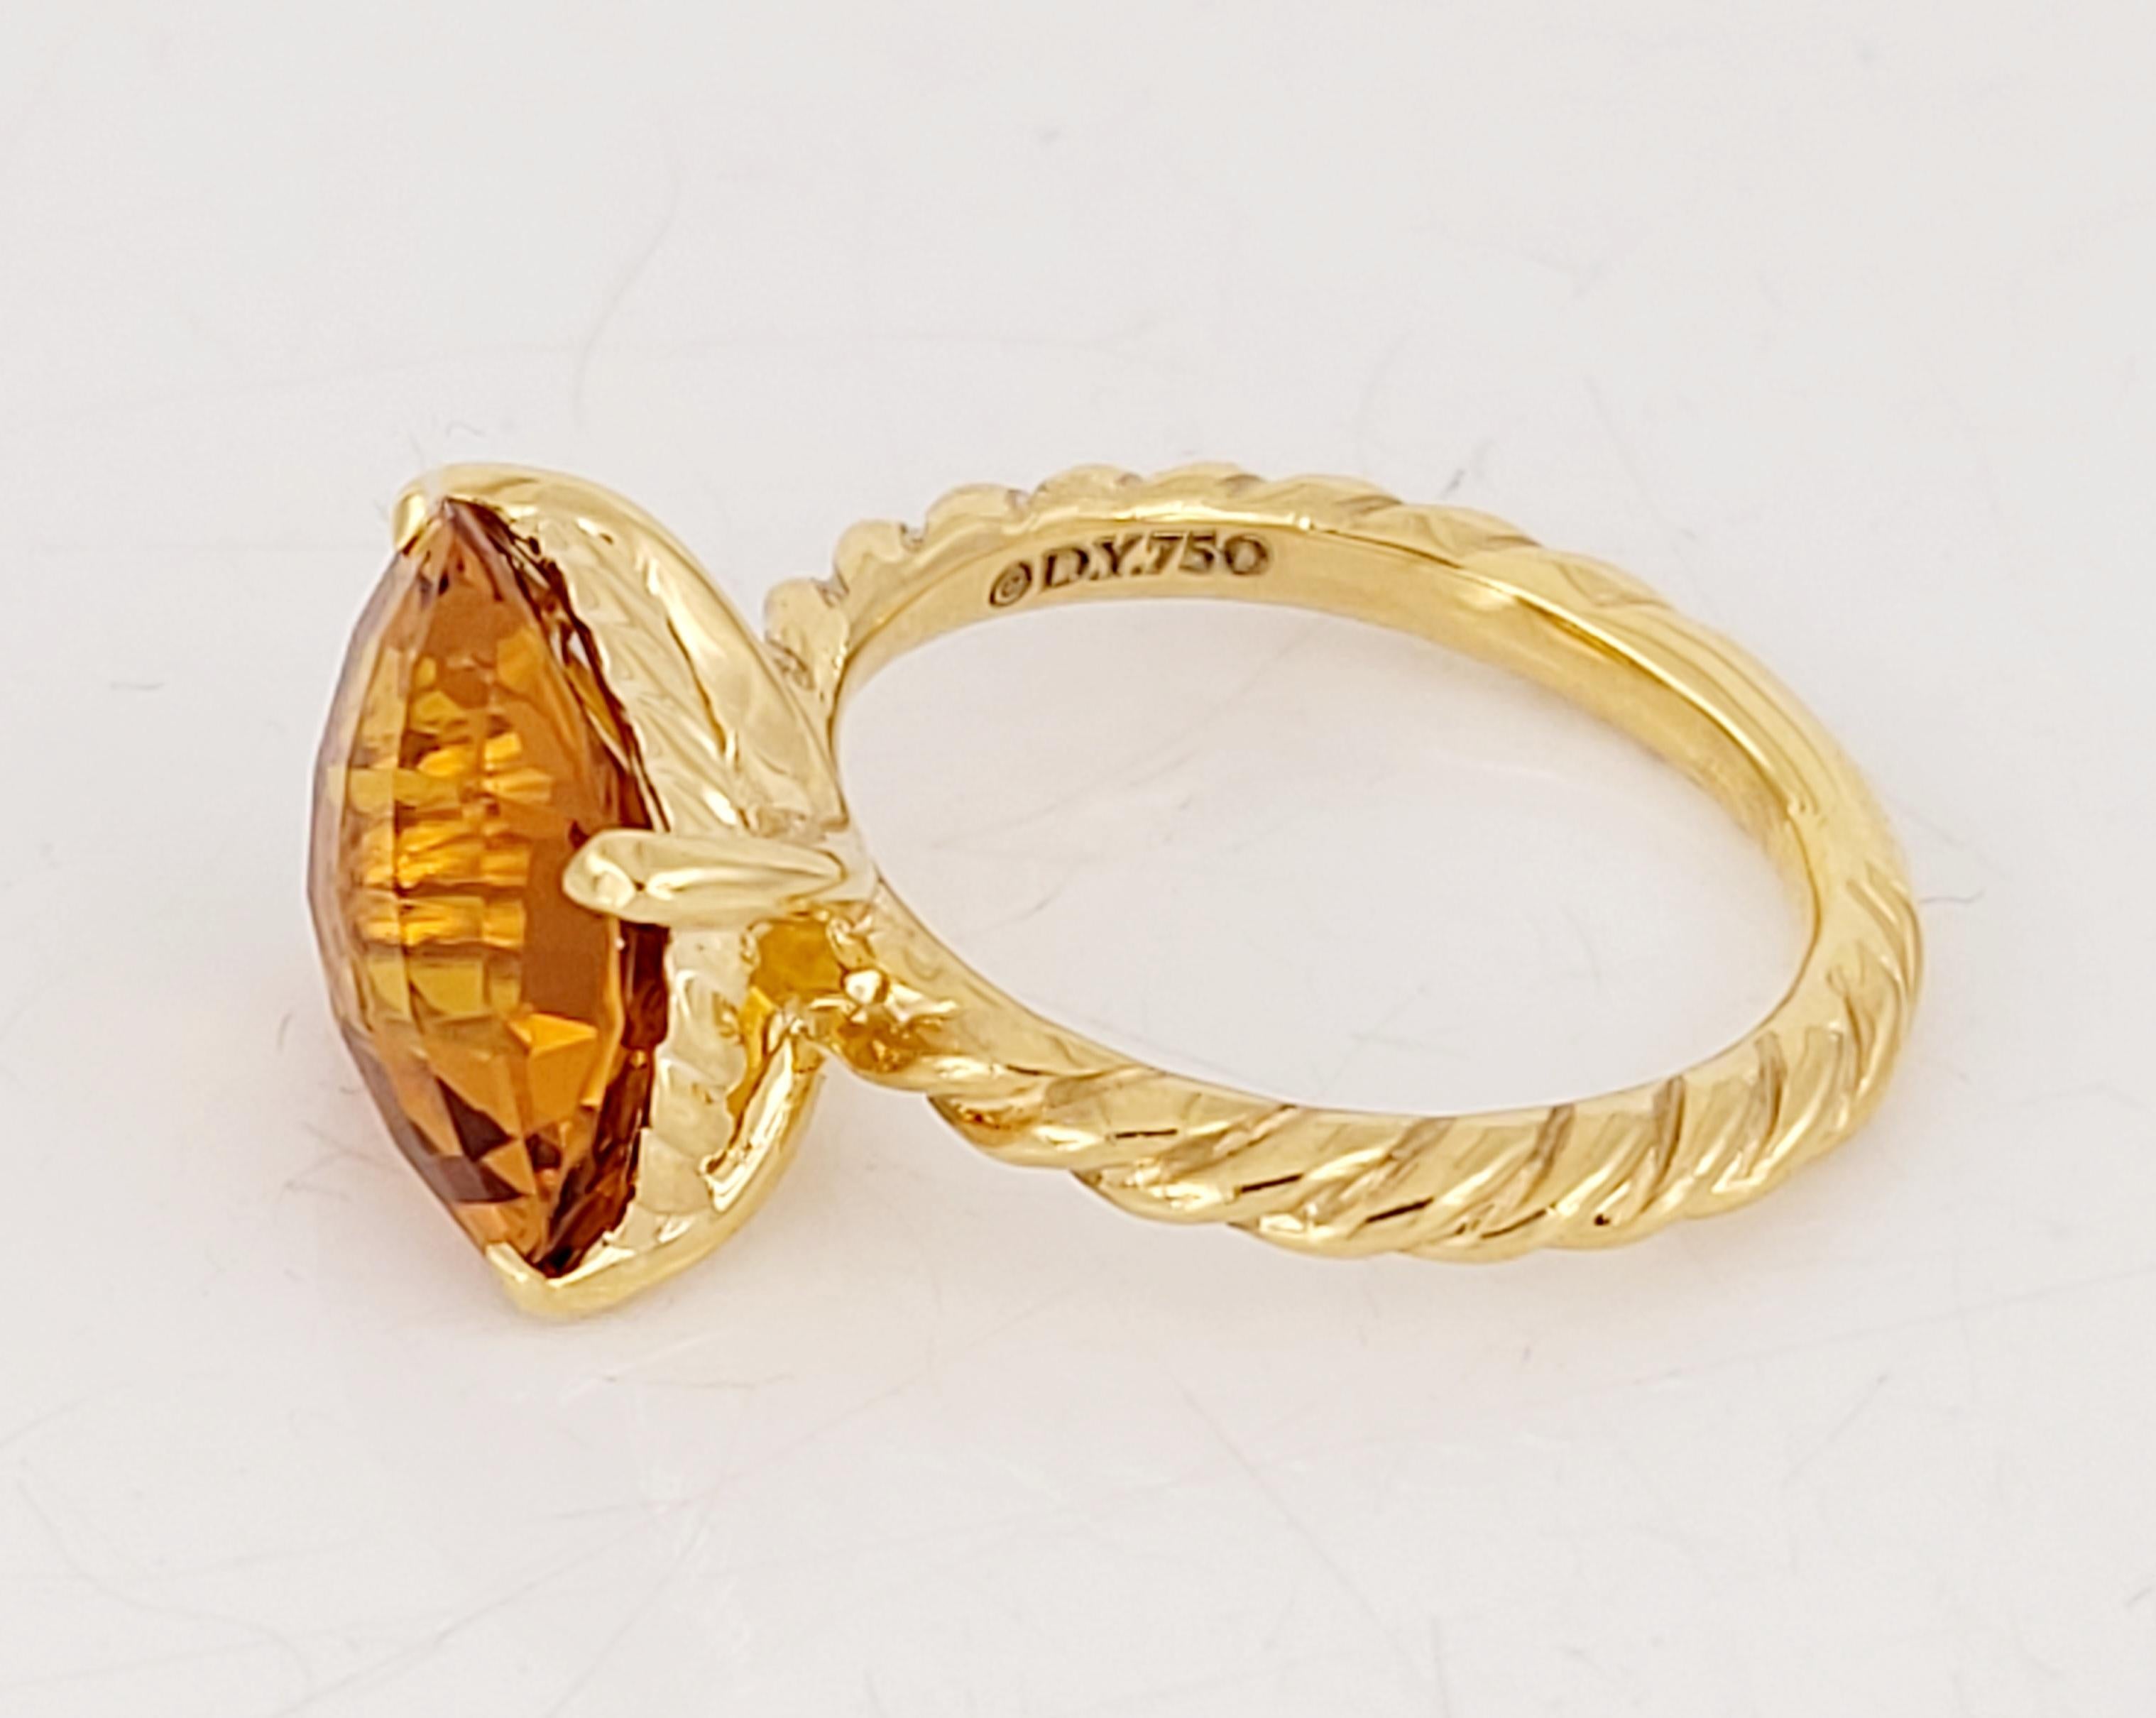 Marke David Yurman
Noblesse Collection'S Ring
MATERIAL 18K Gelbgold
Edelstein 3,25ct
Ring Größe 5.25
Ring Gewicht 4.7gr
Zustand Neu, nie getragen 
Einzelhandelspreis:$2.650